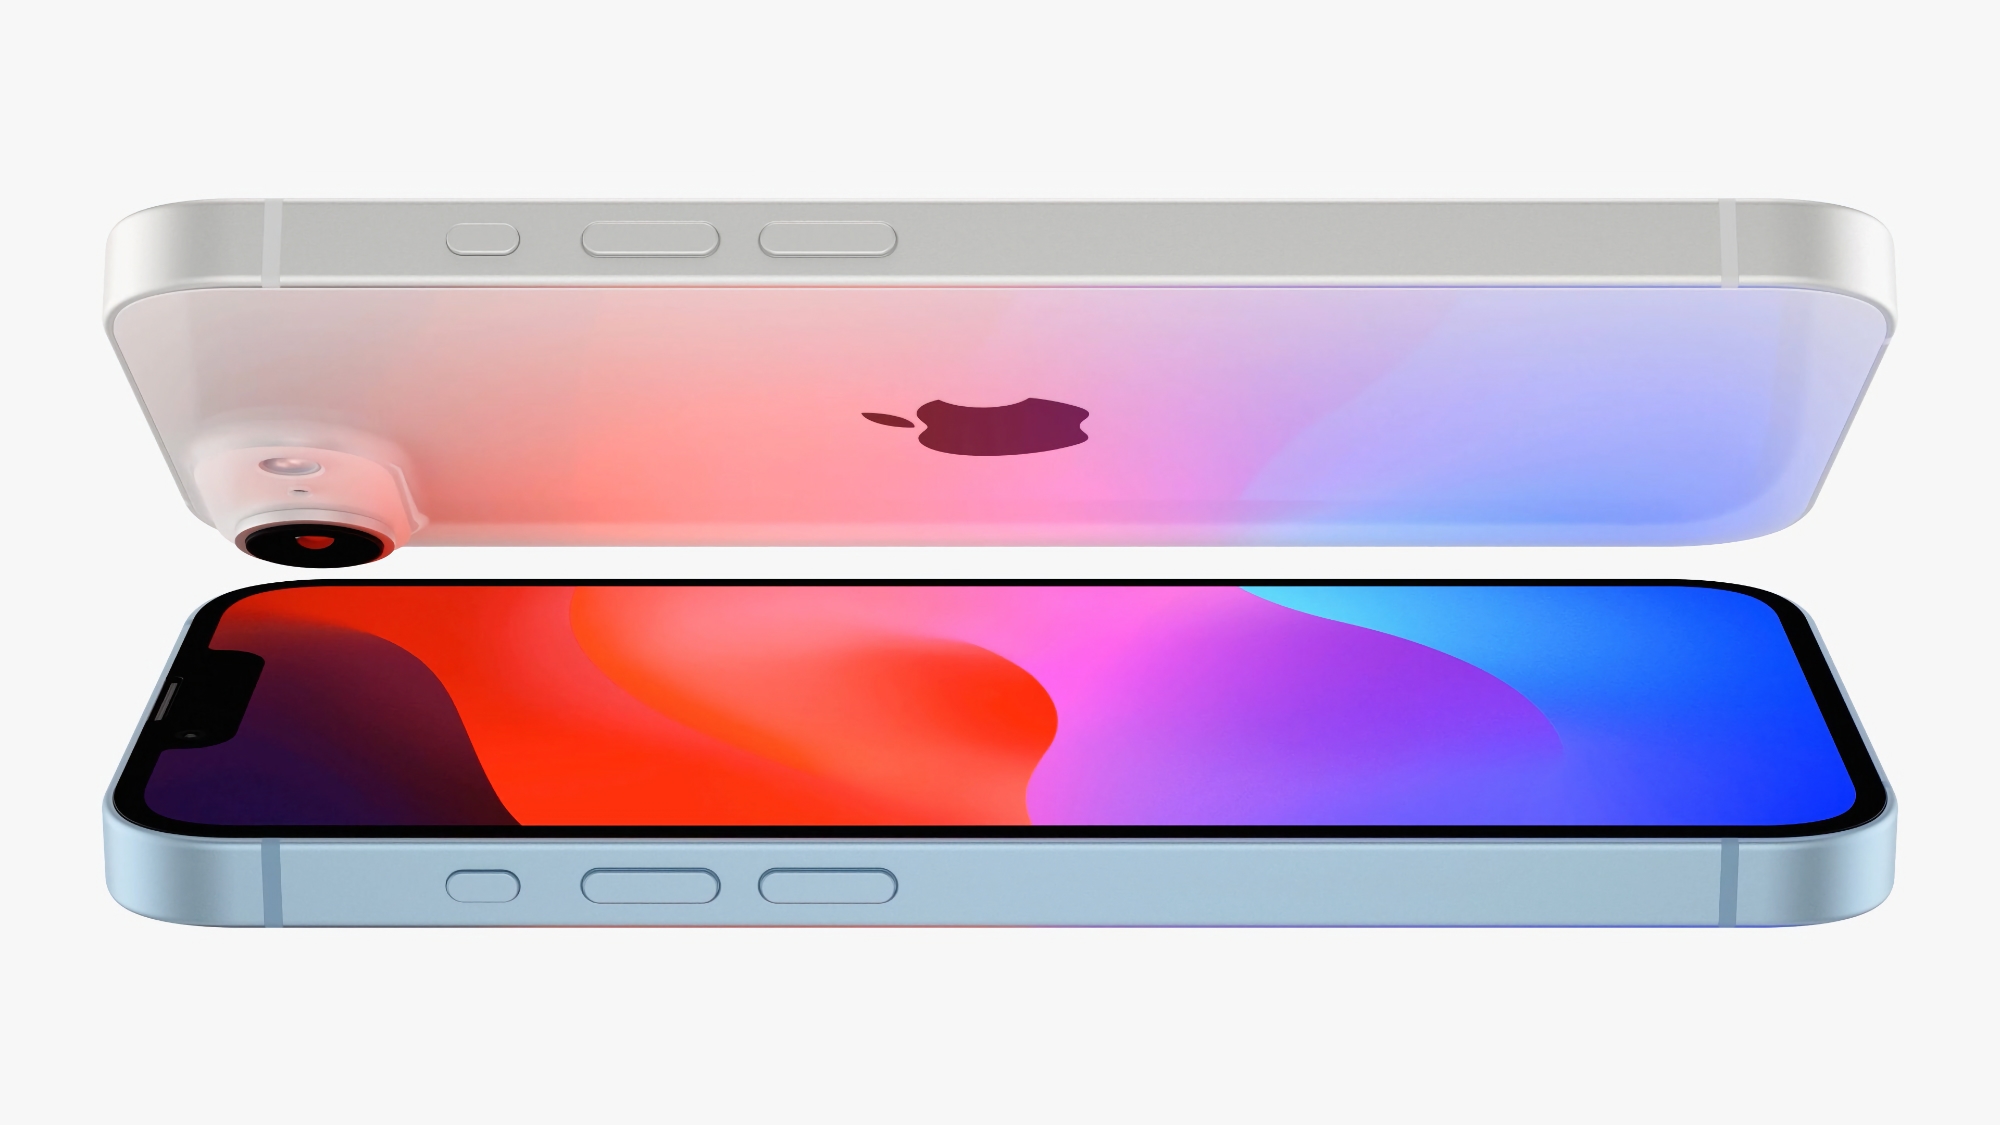 Rykte: iPhone SE 4 kommer att få en 6,1-tums OLED-skärm tillverkad av det kinesiska företaget BOE